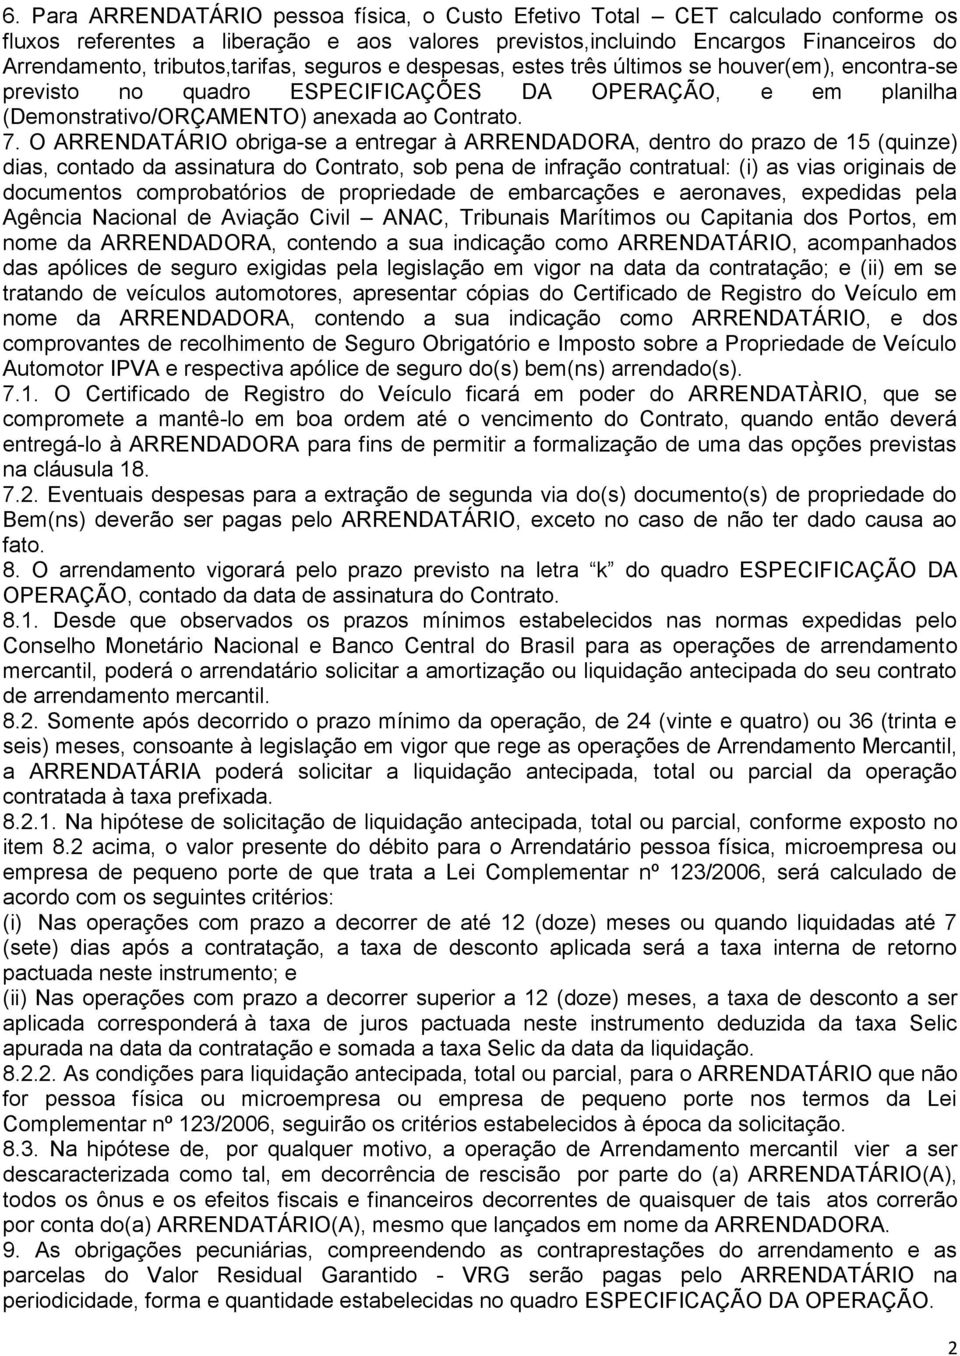 O ARRENDATÁRIO obriga-se a entregar à ARRENDADORA, dentro do prazo de 15 (quinze) dias, contado da assinatura do Contrato, sob pena de infração contratual: (i) as vias originais de documentos